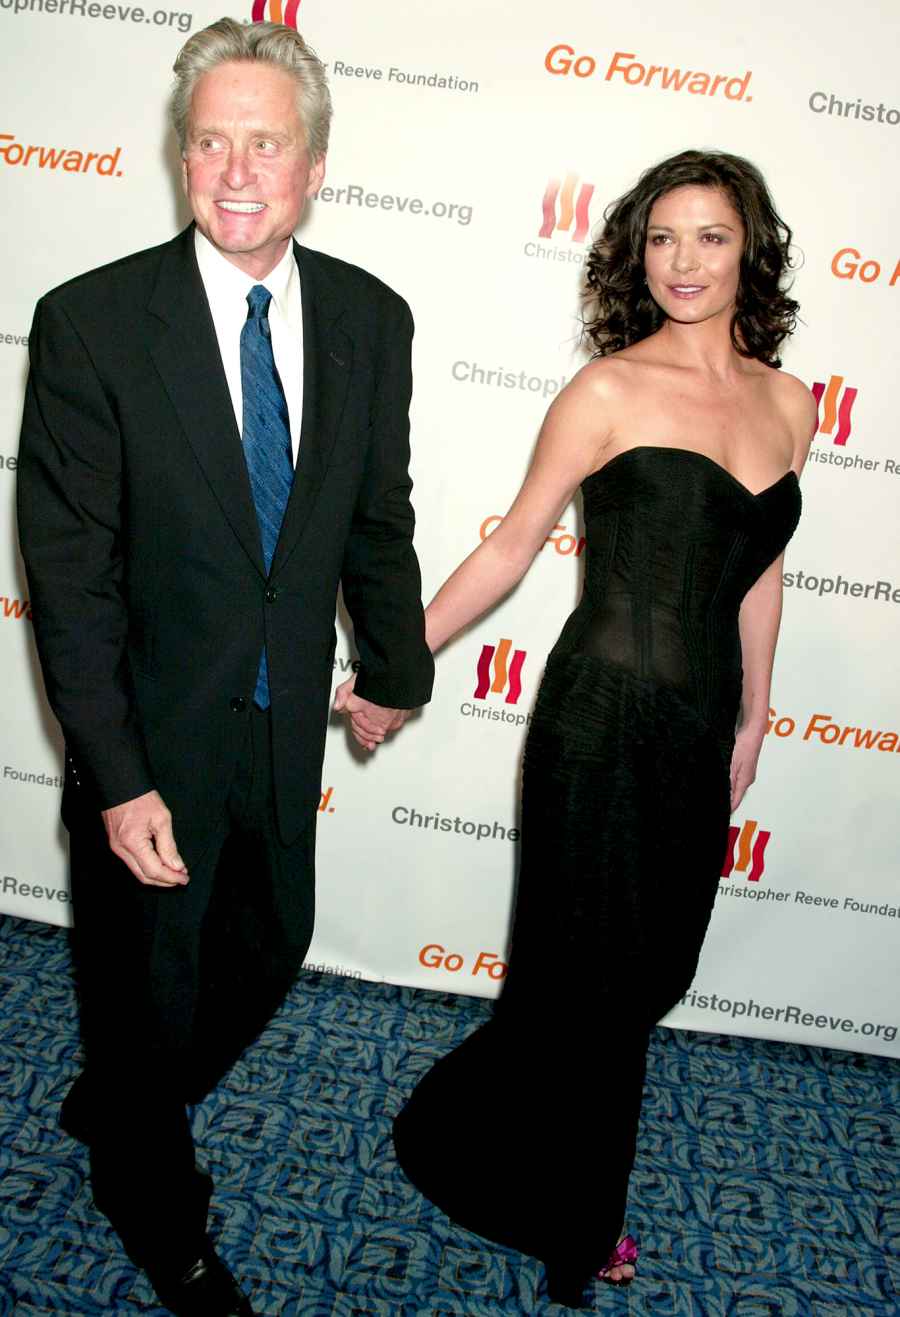 Michael-Douglas-and-Catherine-Zeta-Jones November-2005-Douglas-and-Zeta-Jones-Christopher-Reeve-Foundation